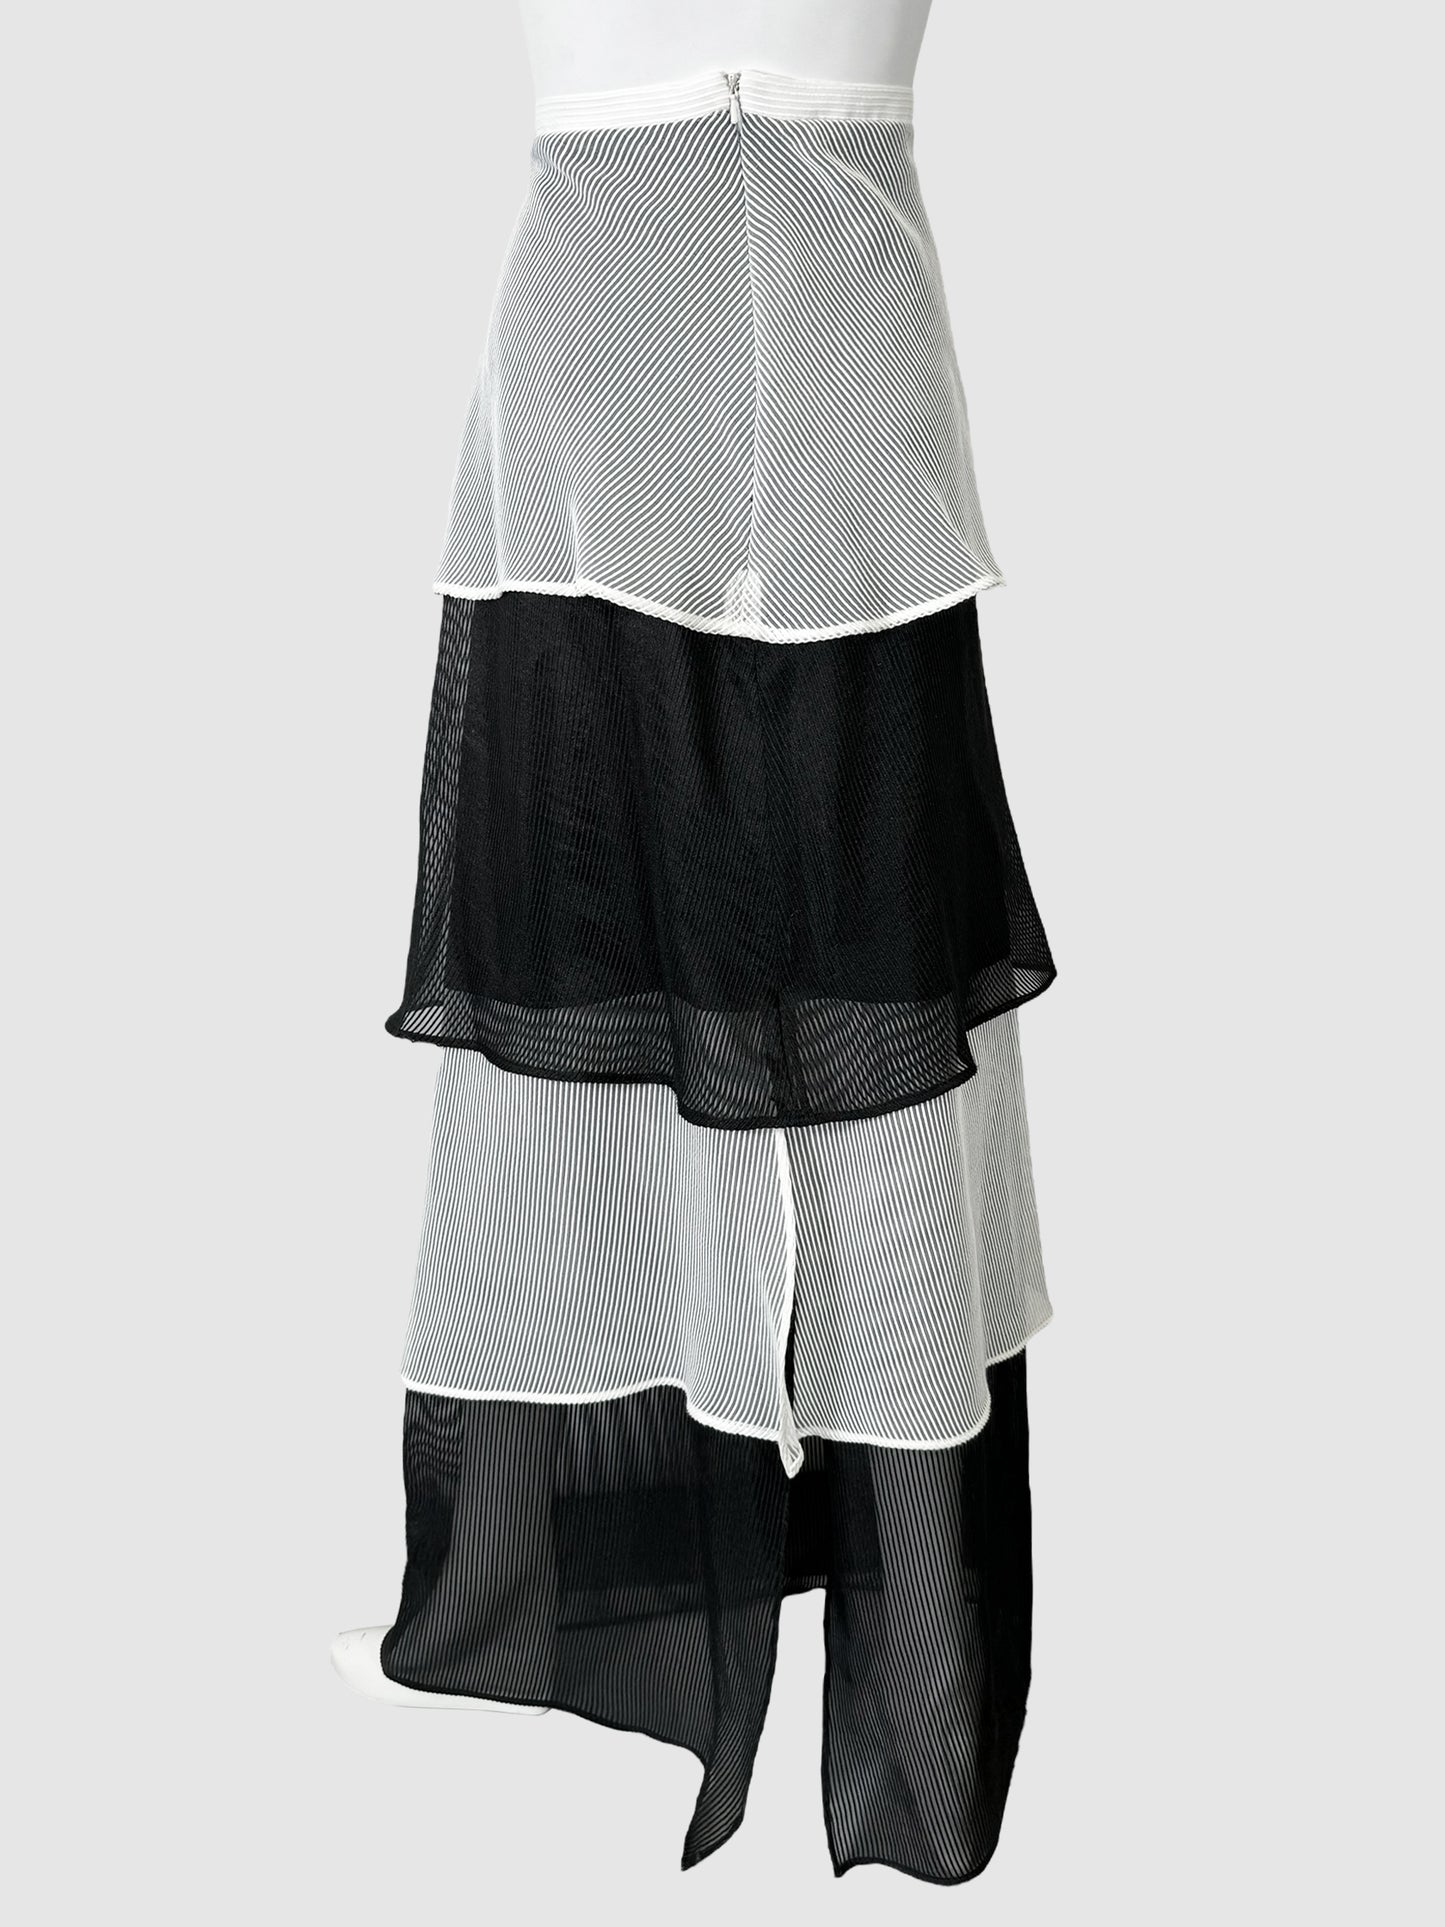 Tiered Maxi Skirt - Size L/XL